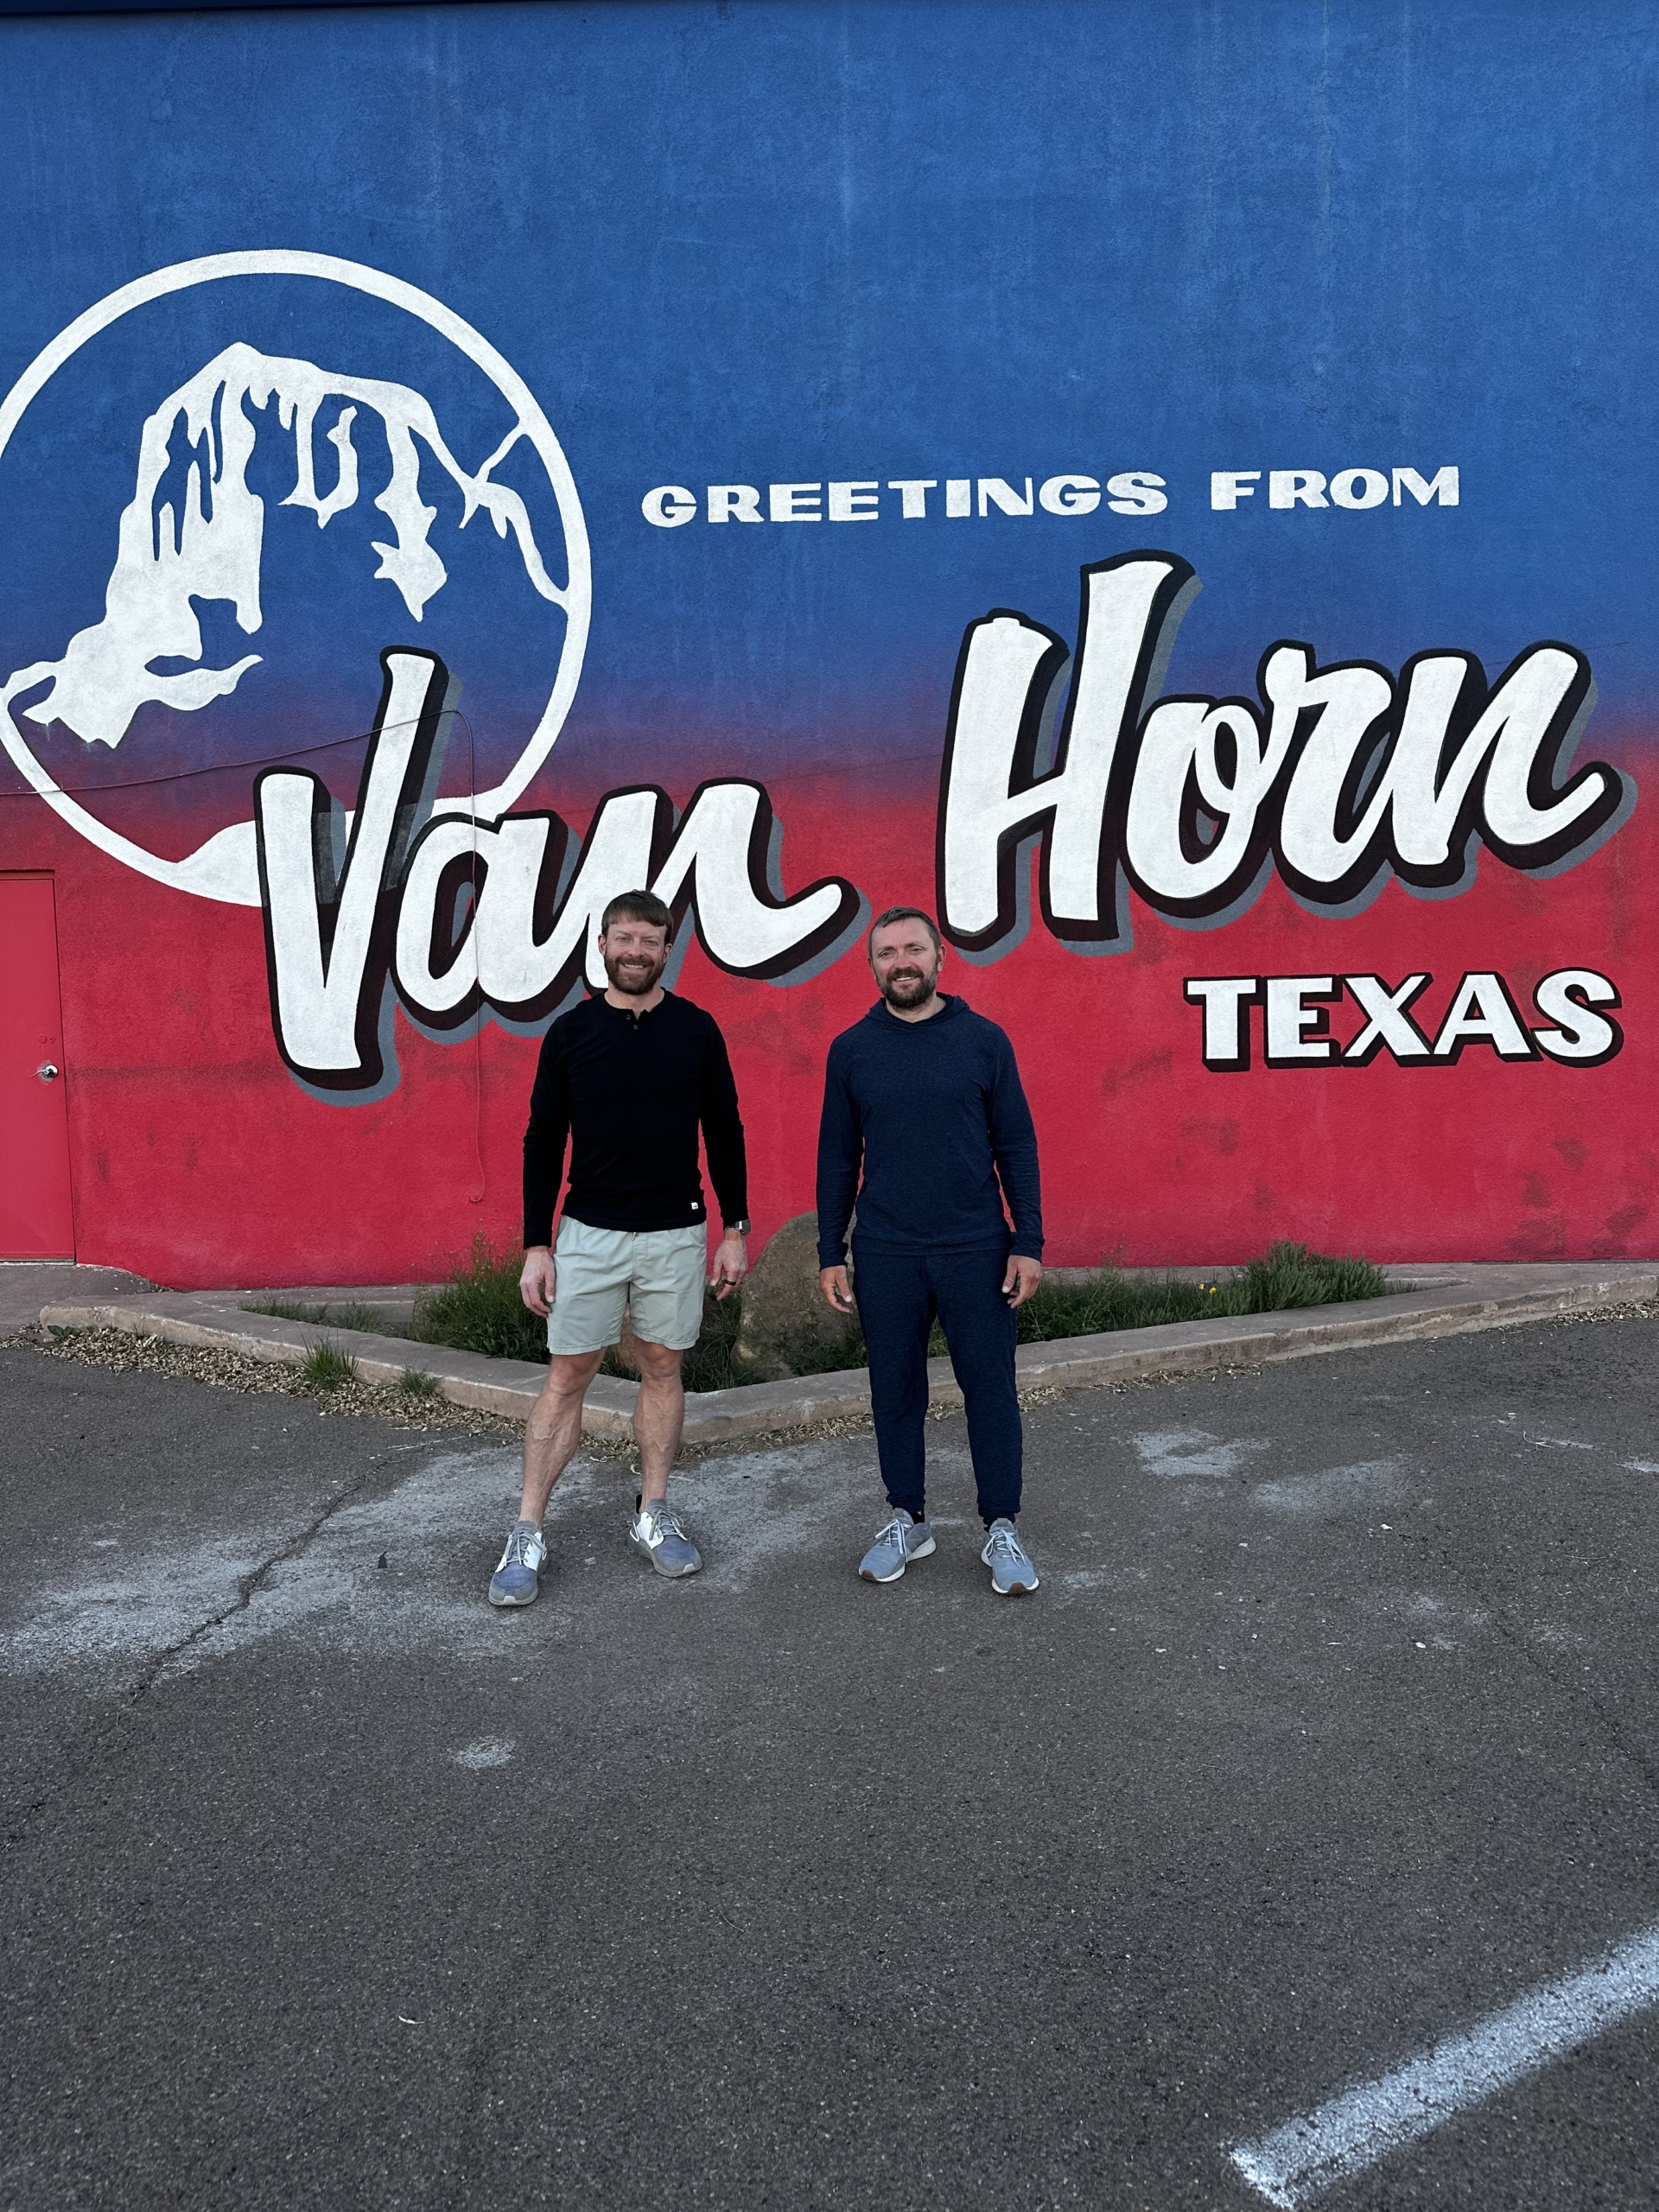 Van Horn, TX